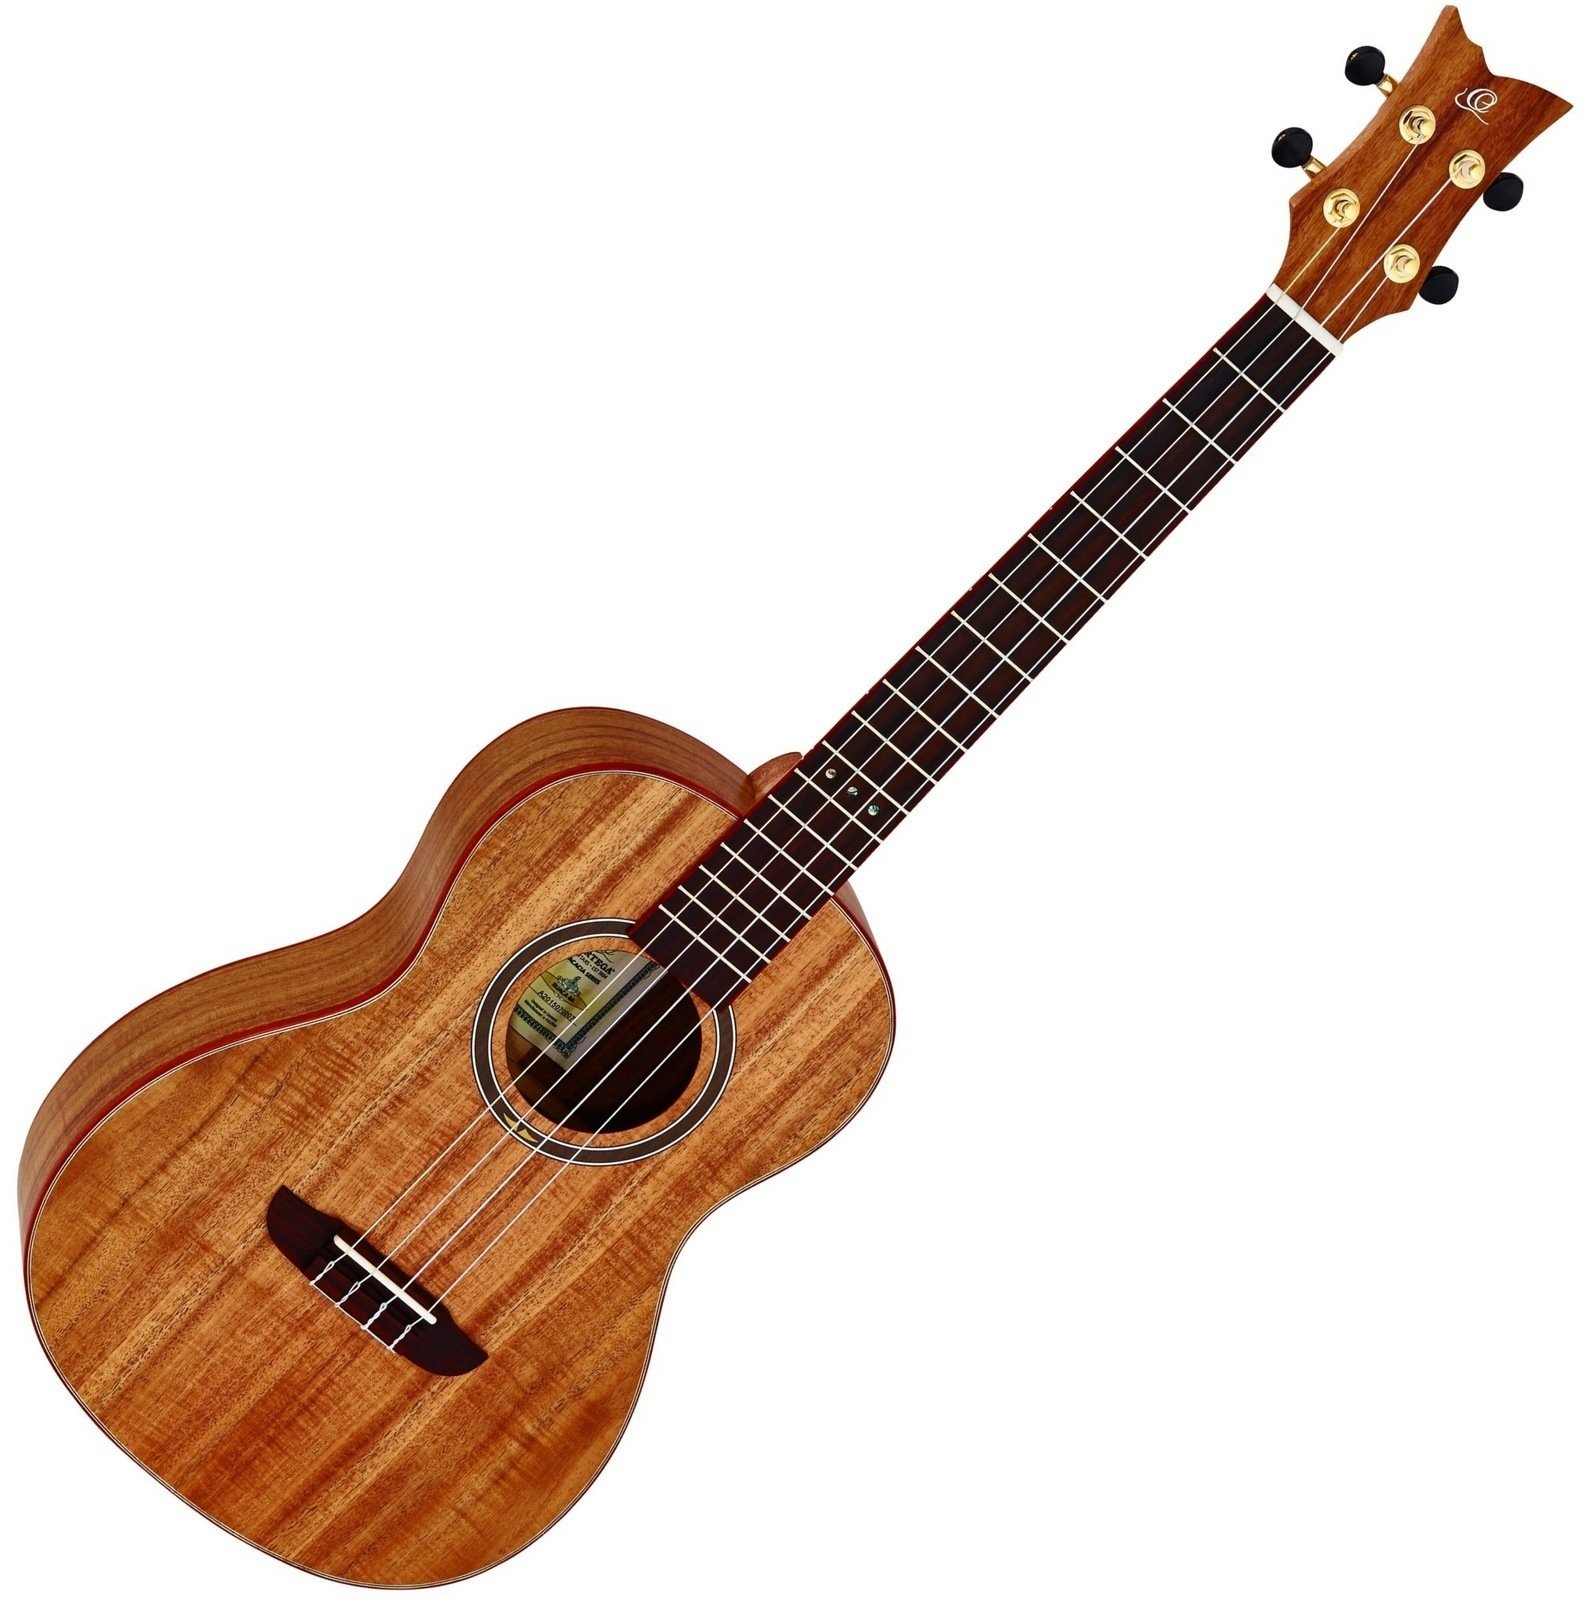 Bariton ukulele Ortega RUACA-BA Bariton ukulele Natural